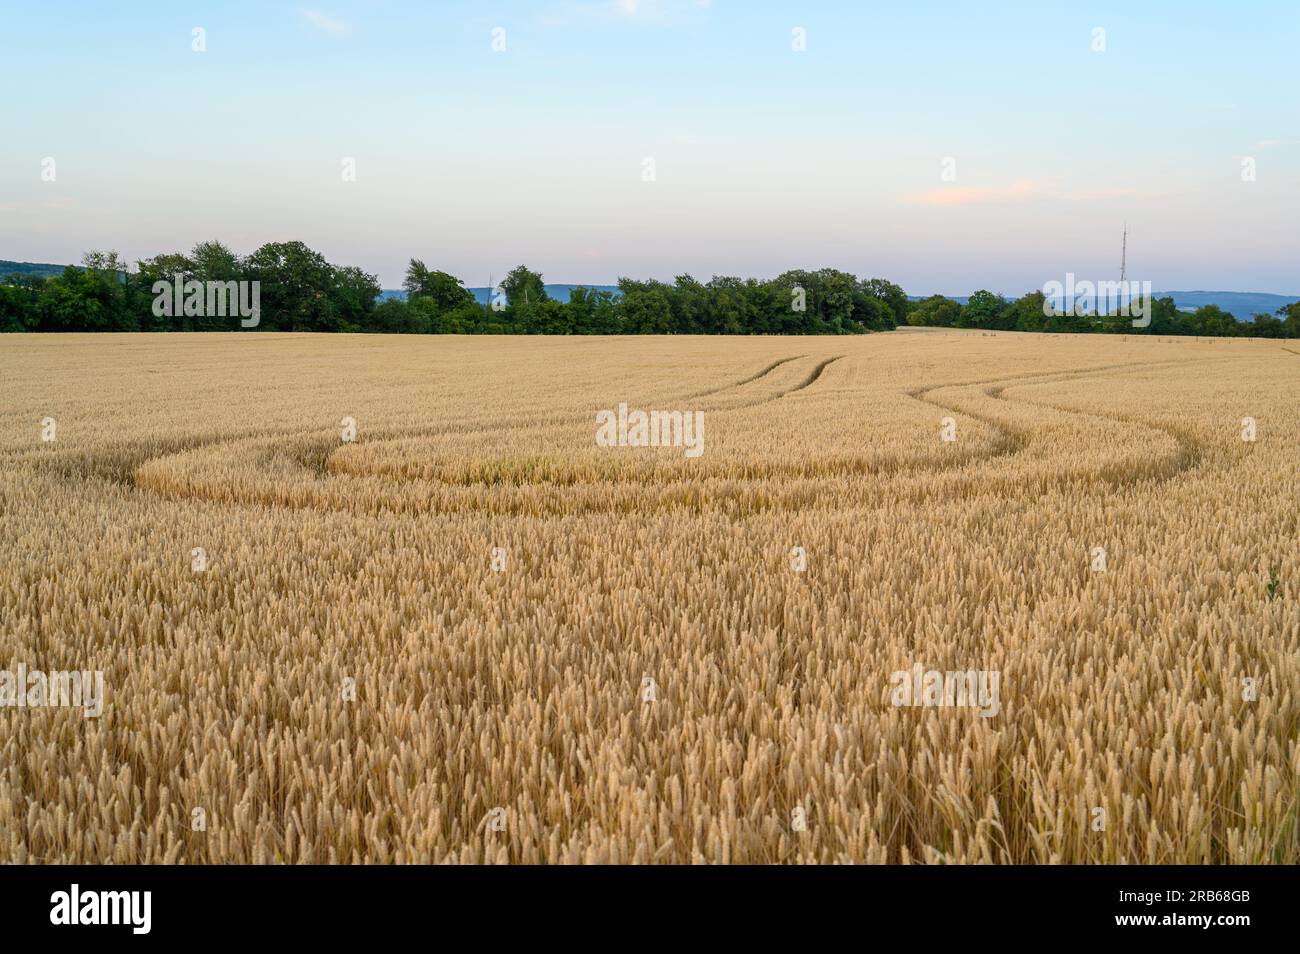 Un campo di grano con tracce di trattore che ruotano nella direzione da cui provenivano, con alberi verdi e cielo limpido all'orizzonte. Foto Stock